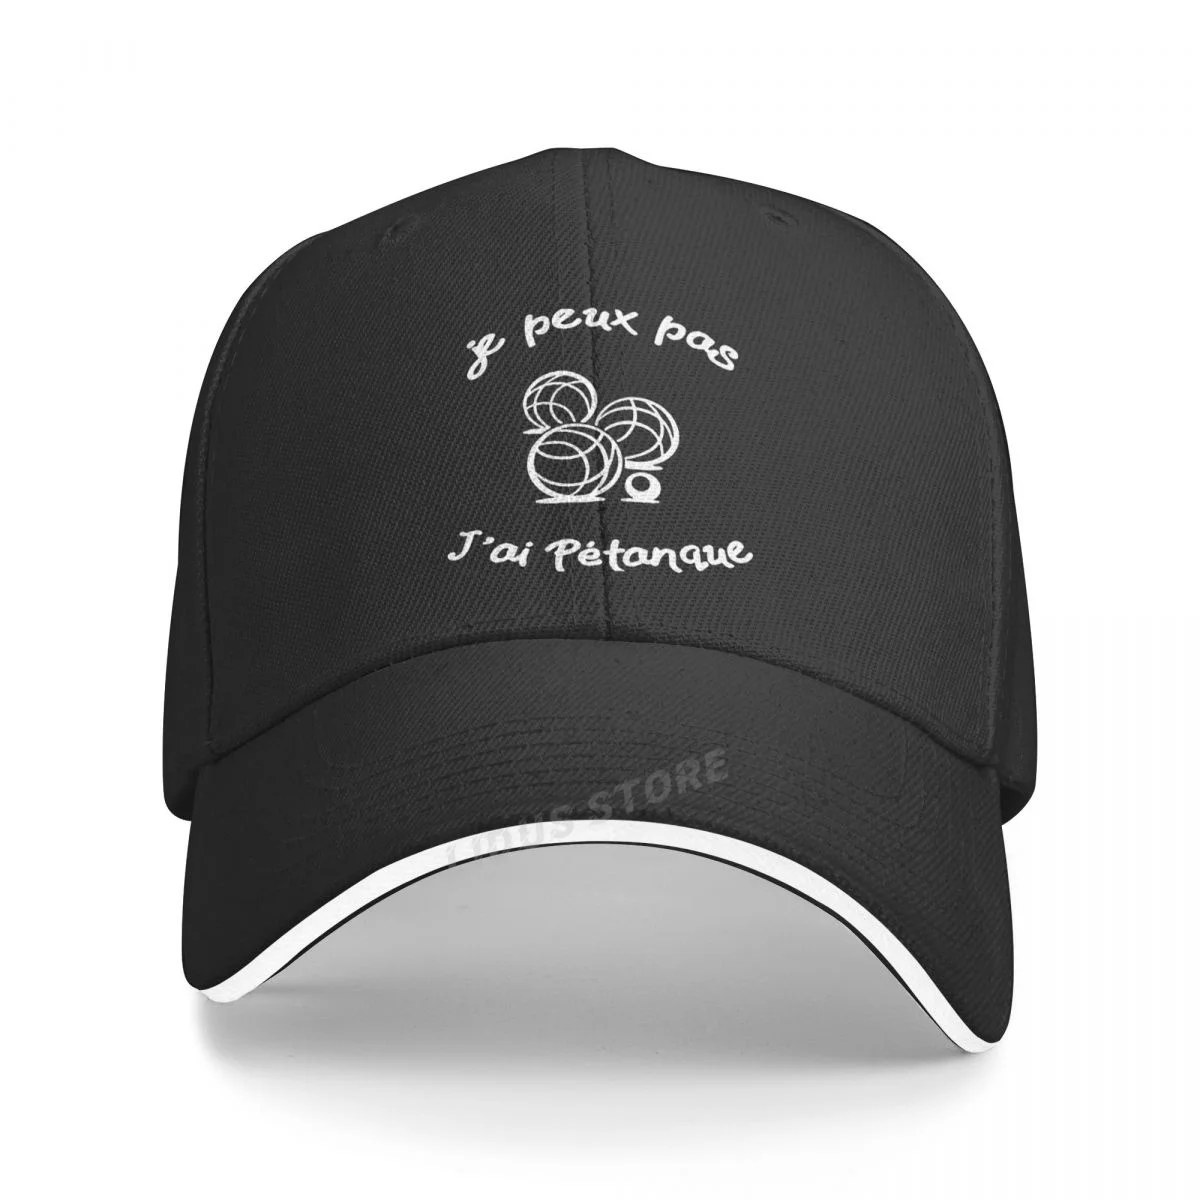 Funny French Petanque Boule Baseball Caps Men Cotton Cool Hat Women Unisex Adjustable Sport Dad Caps